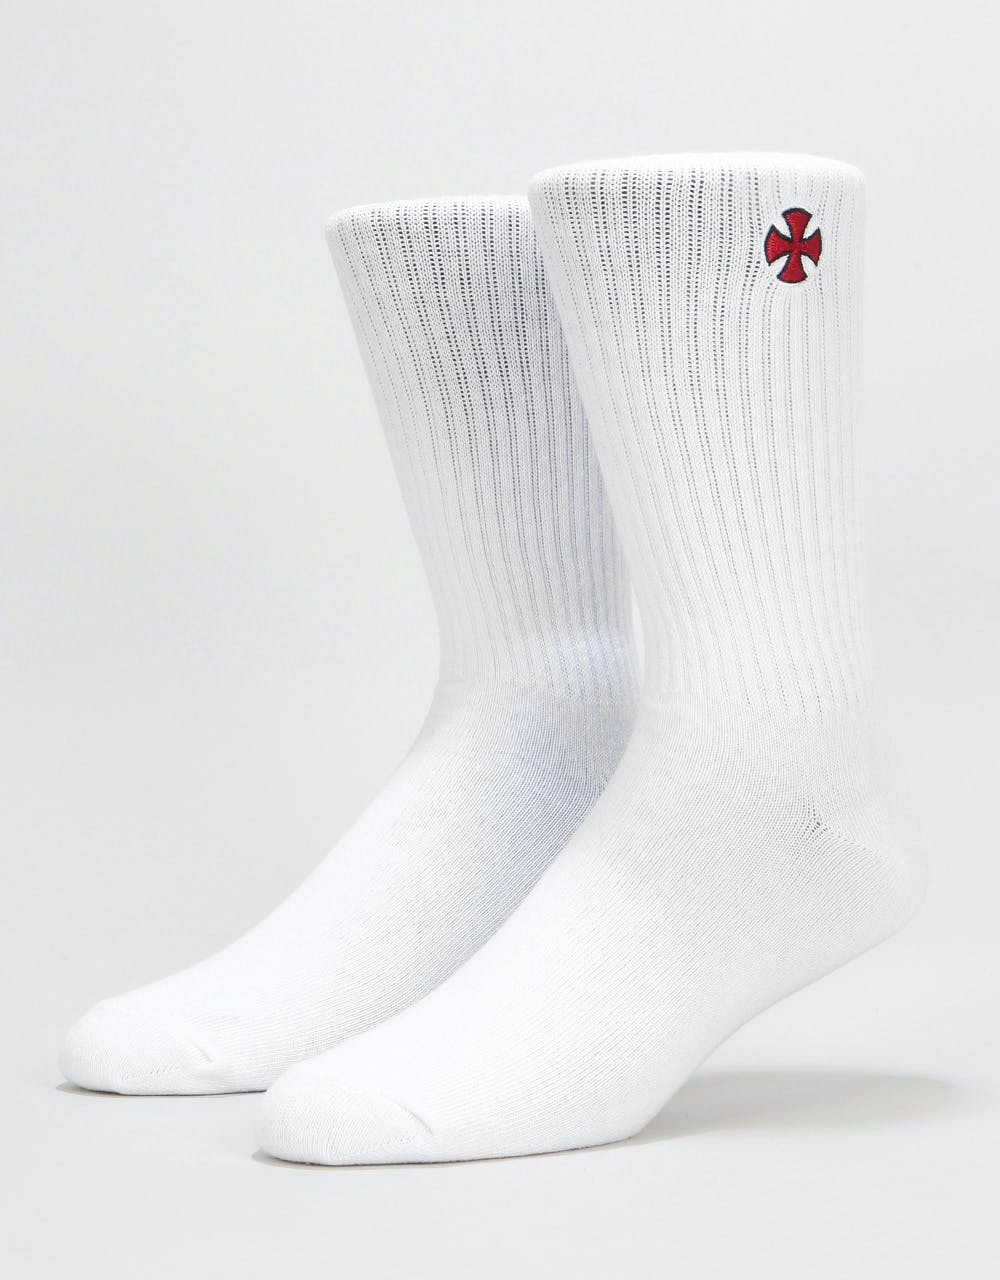 Independent Cross Socks - White